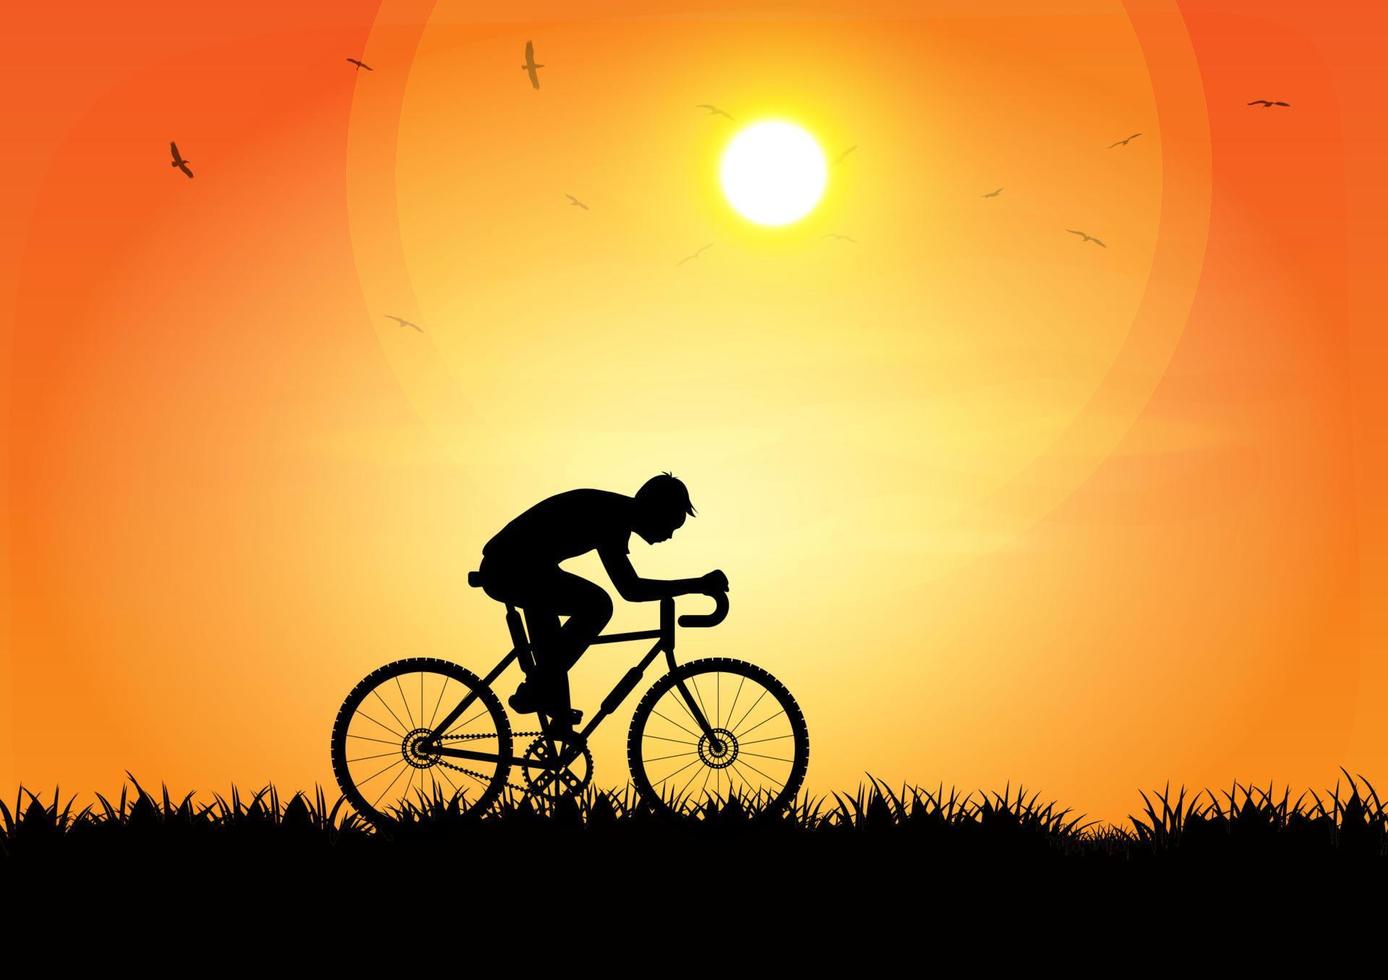 homem de imagem gráfica andando de bicicleta à noite com um fundo por do sol e silhueta laranja do pôr do sol com grama escura no chão ilustração vetorial vetor